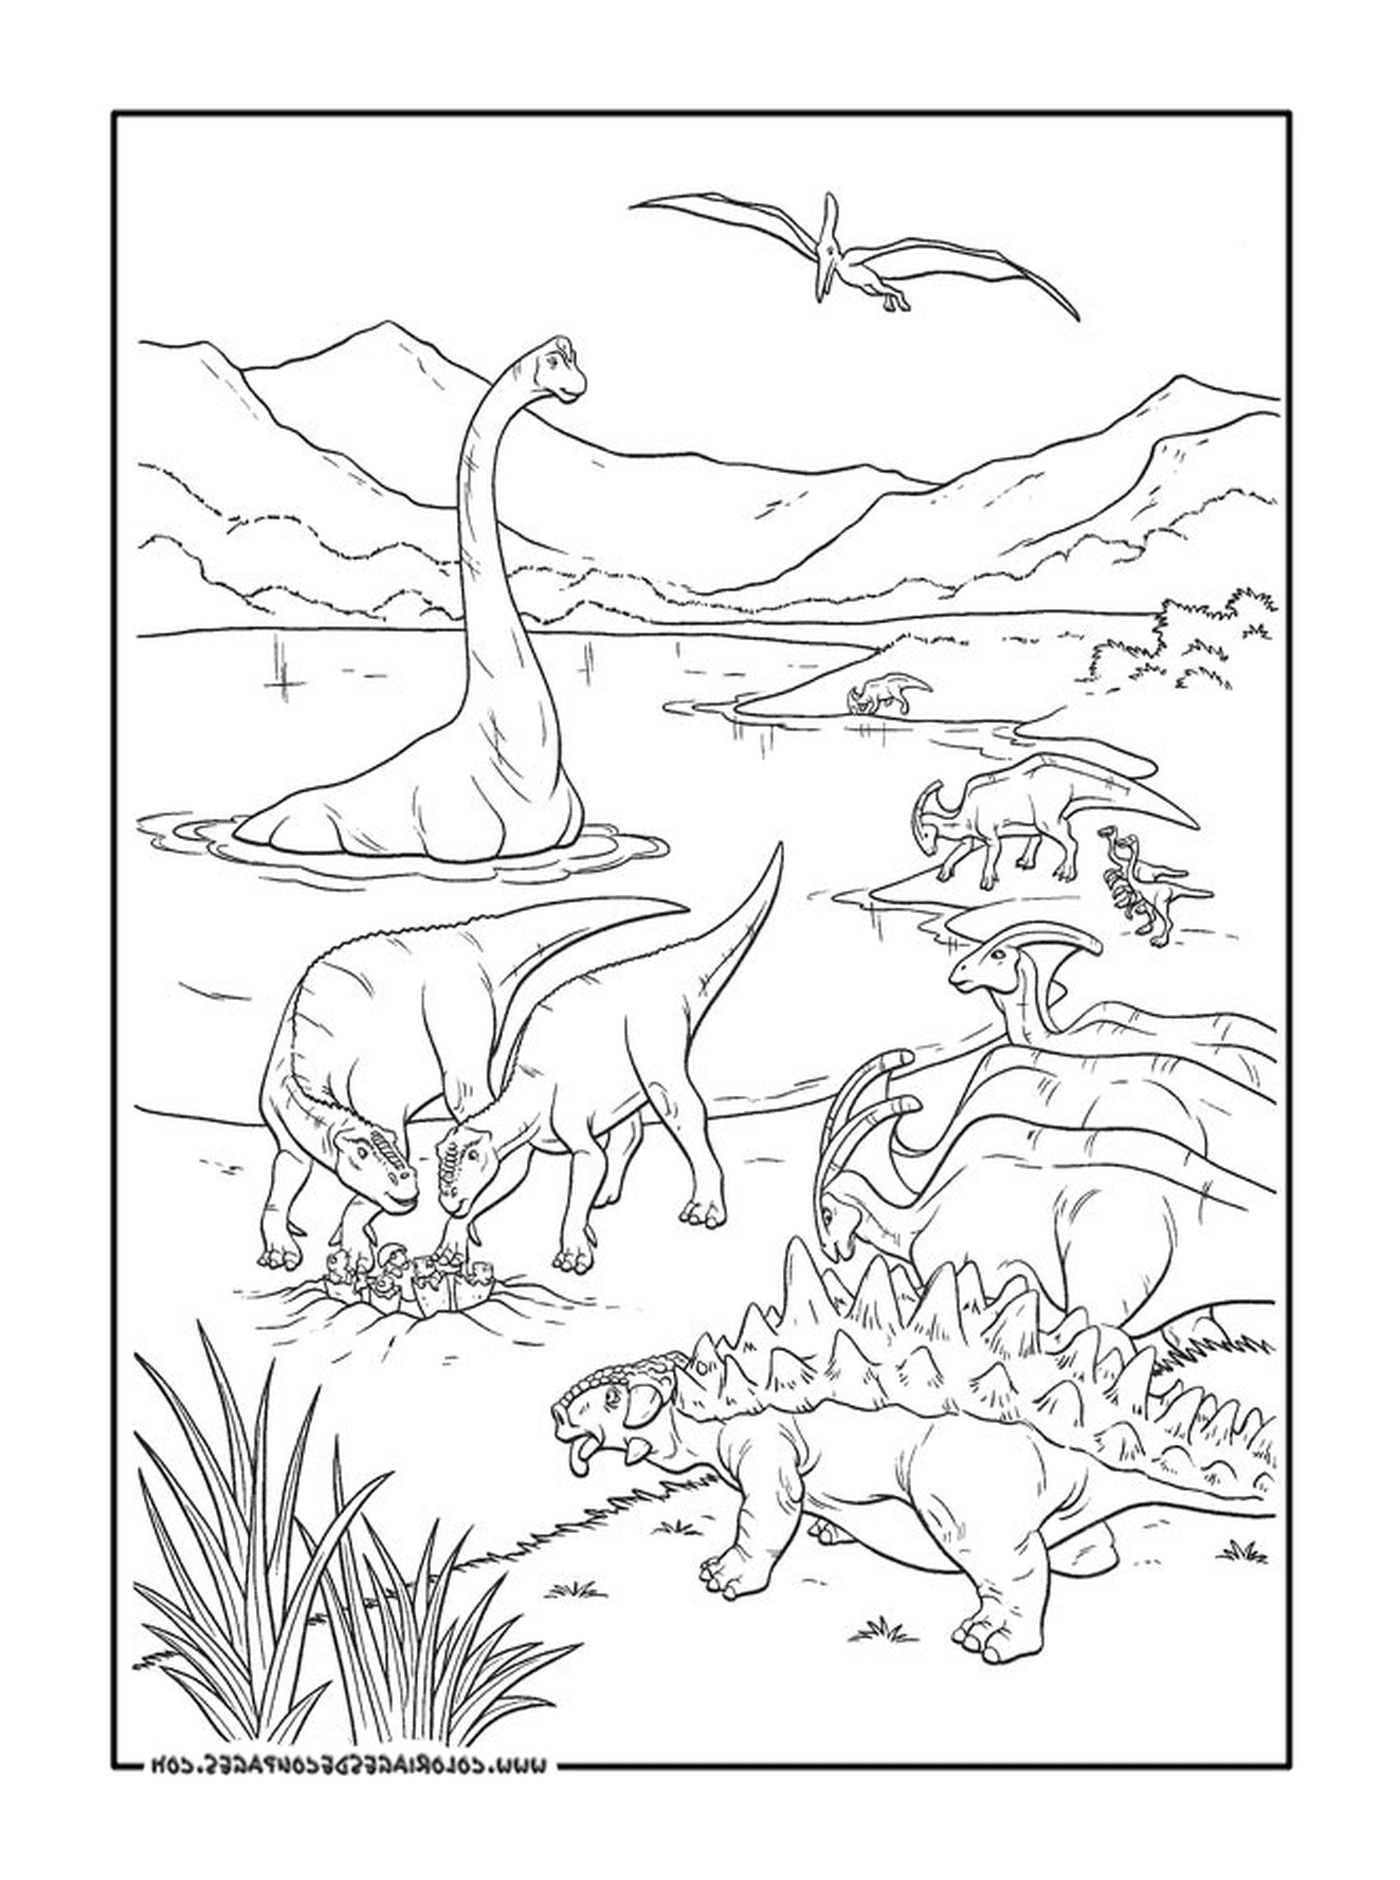  Взрослый из группы динозавров 